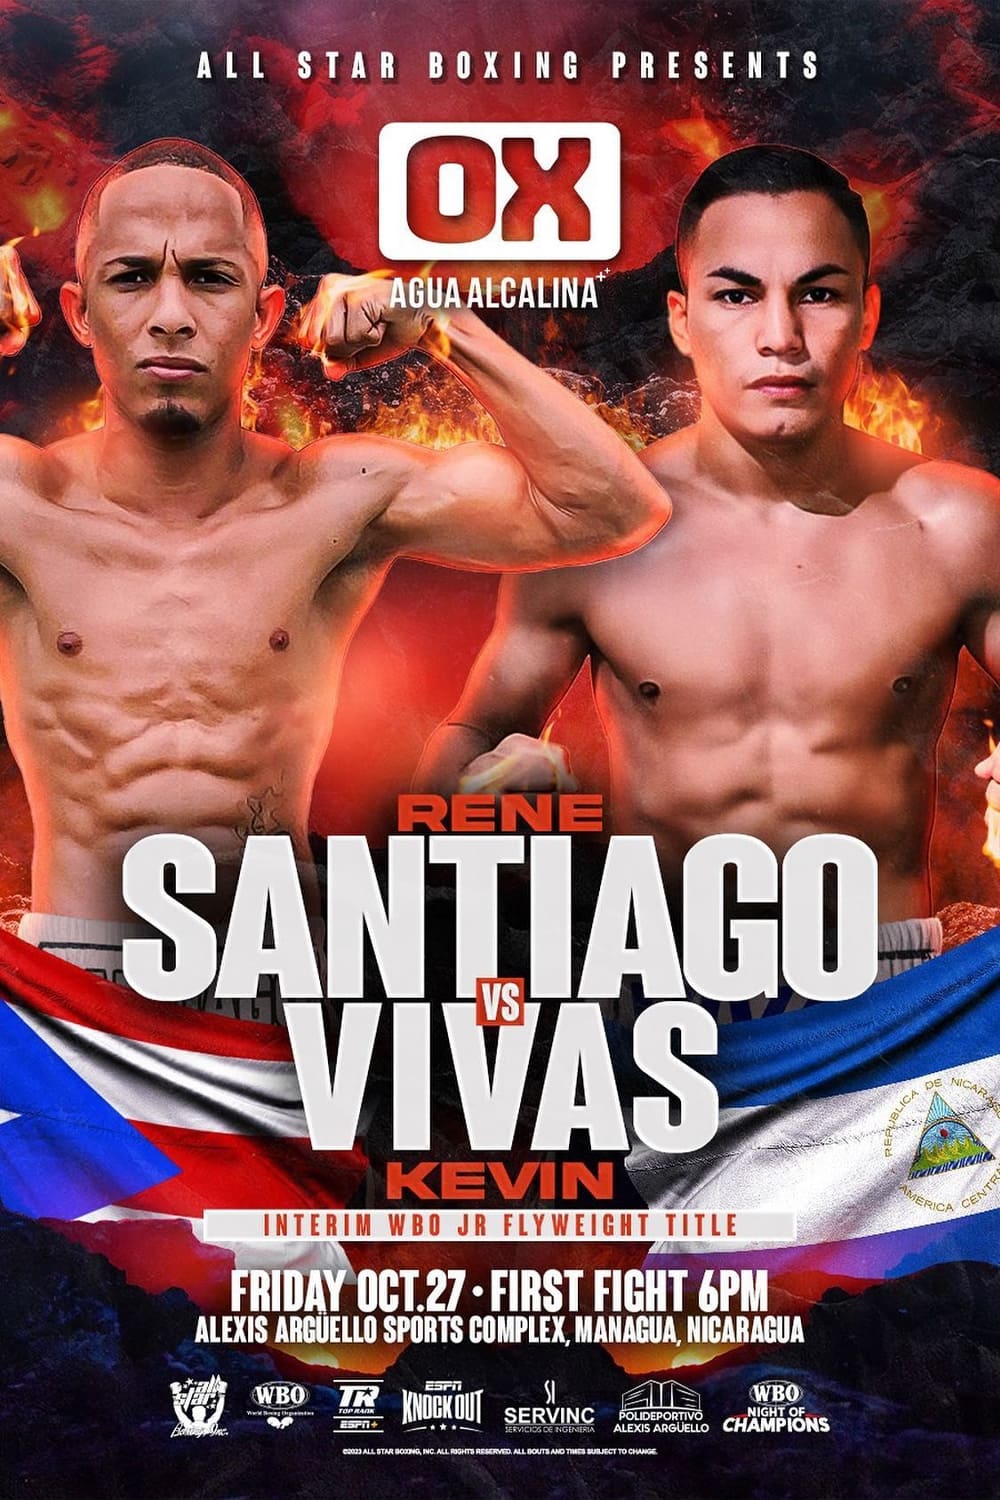 Rene Santiago vs. Kevin Vivas